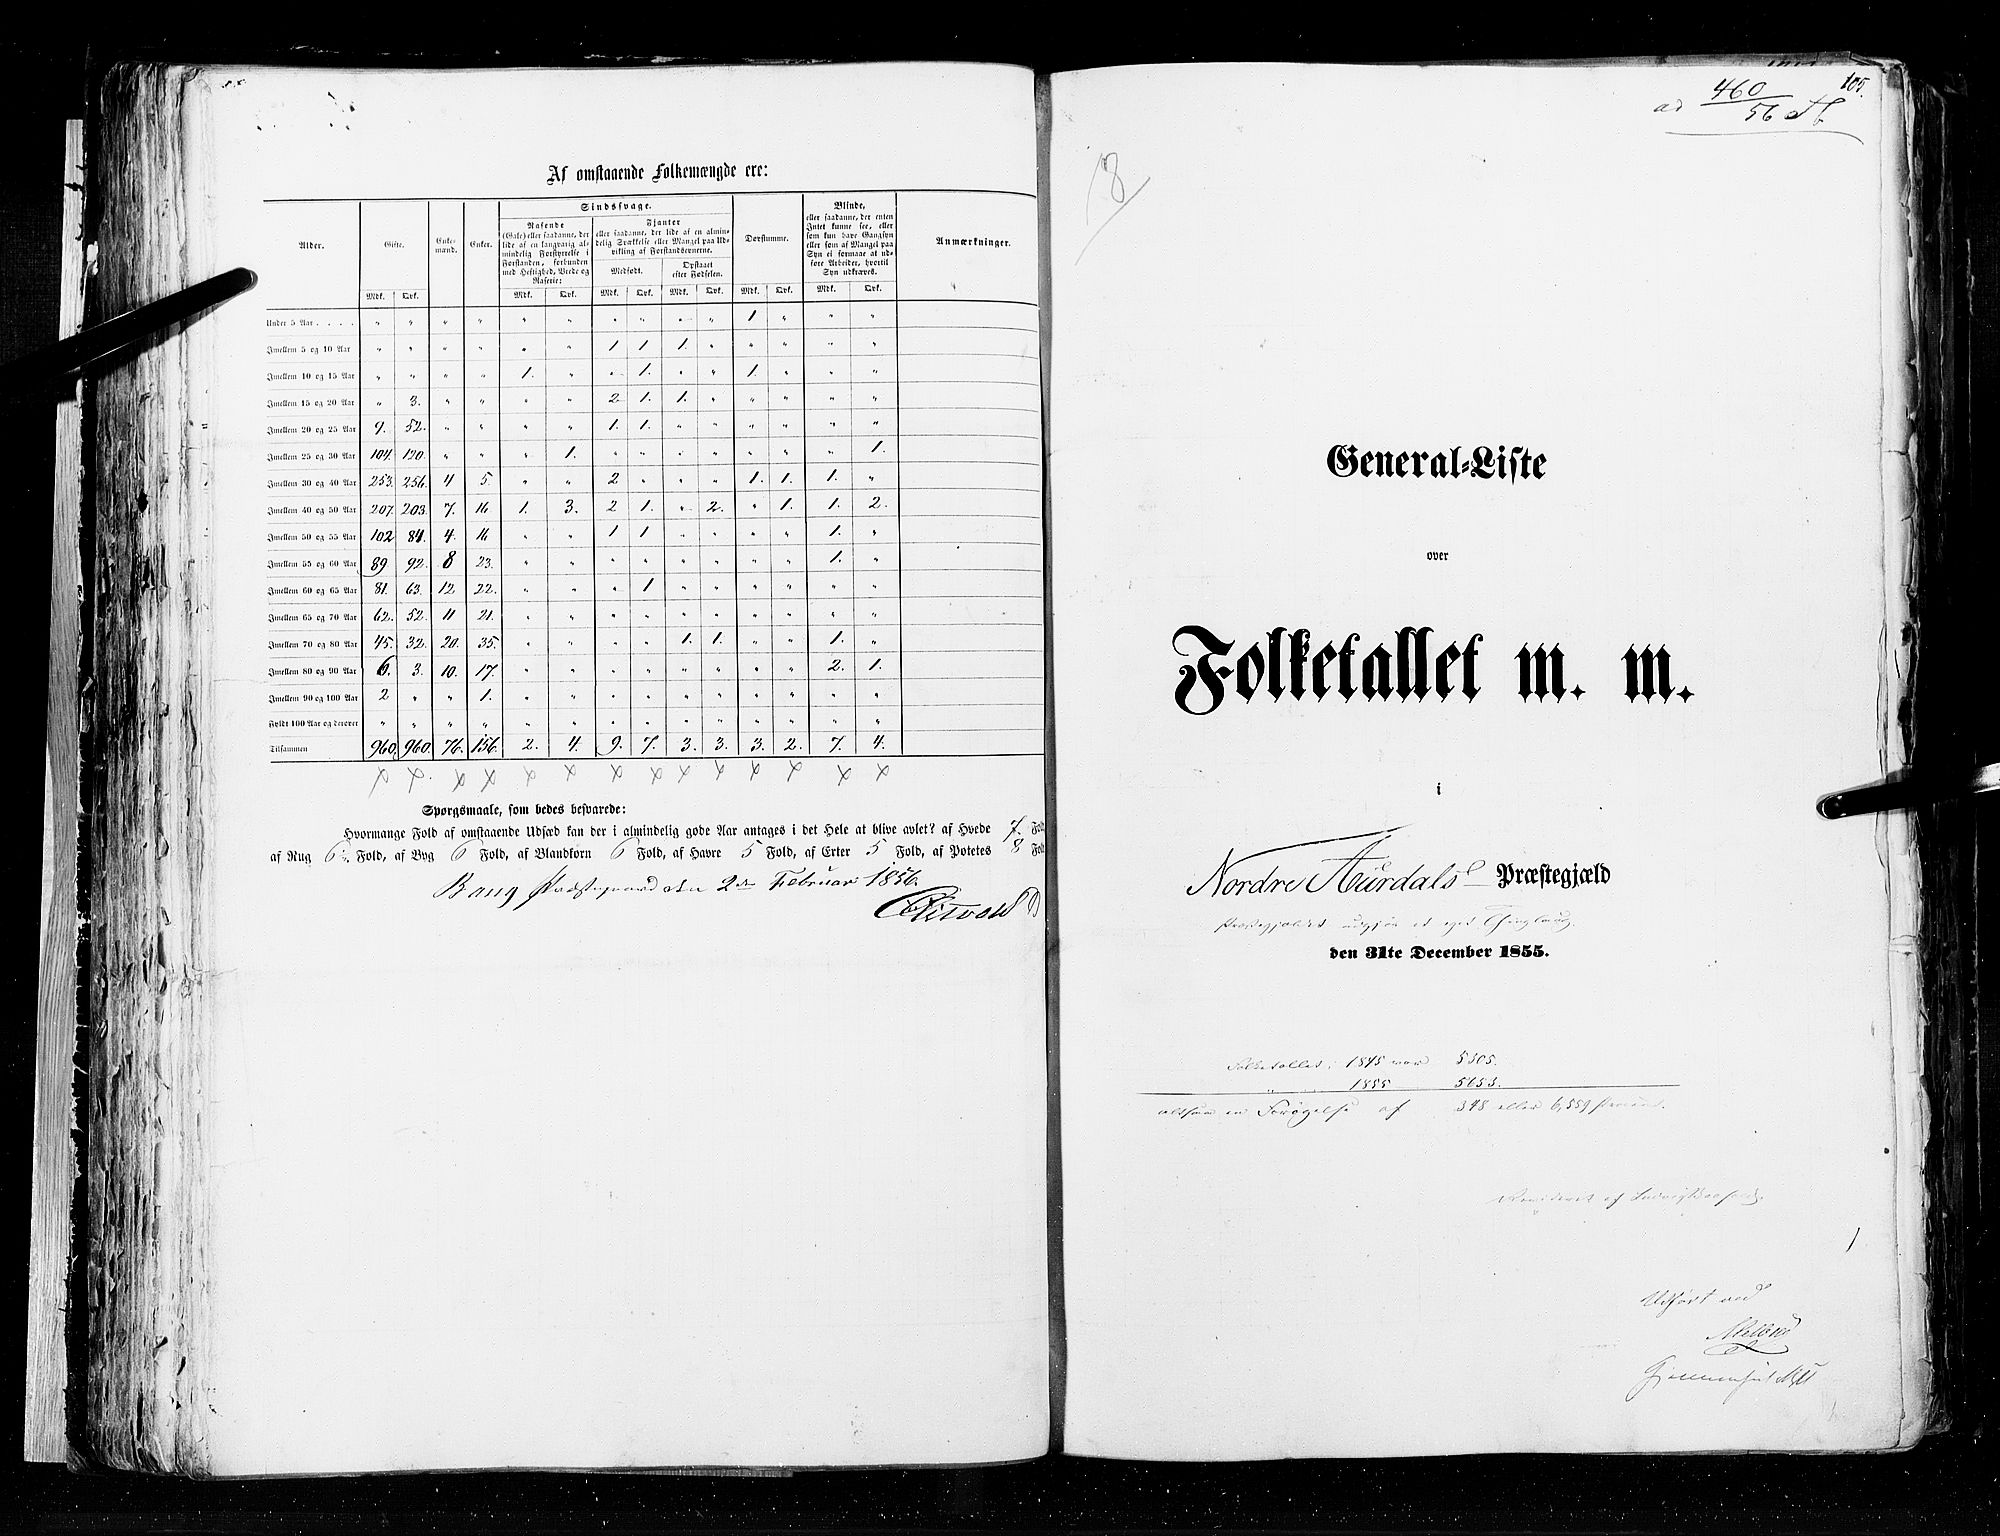 RA, Census 1855, vol. 2: Kristians amt, Buskerud amt og Jarlsberg og Larvik amt, 1855, p. 105